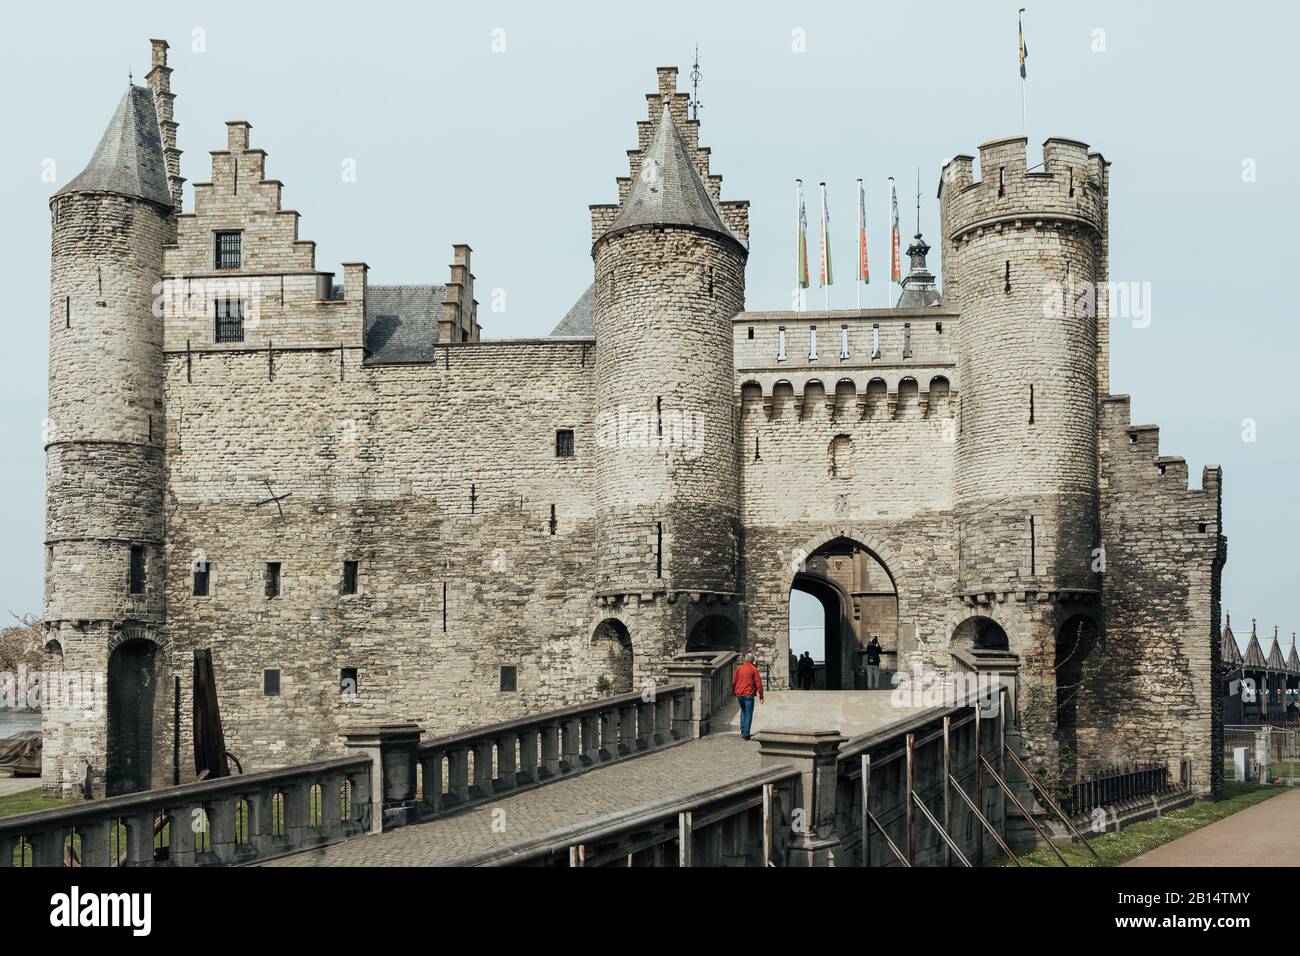 Medieval castle Het Steen in Antwerp. Castle Han Steen iz landmark and main touristic attraction in antwerpen. Stock Photo